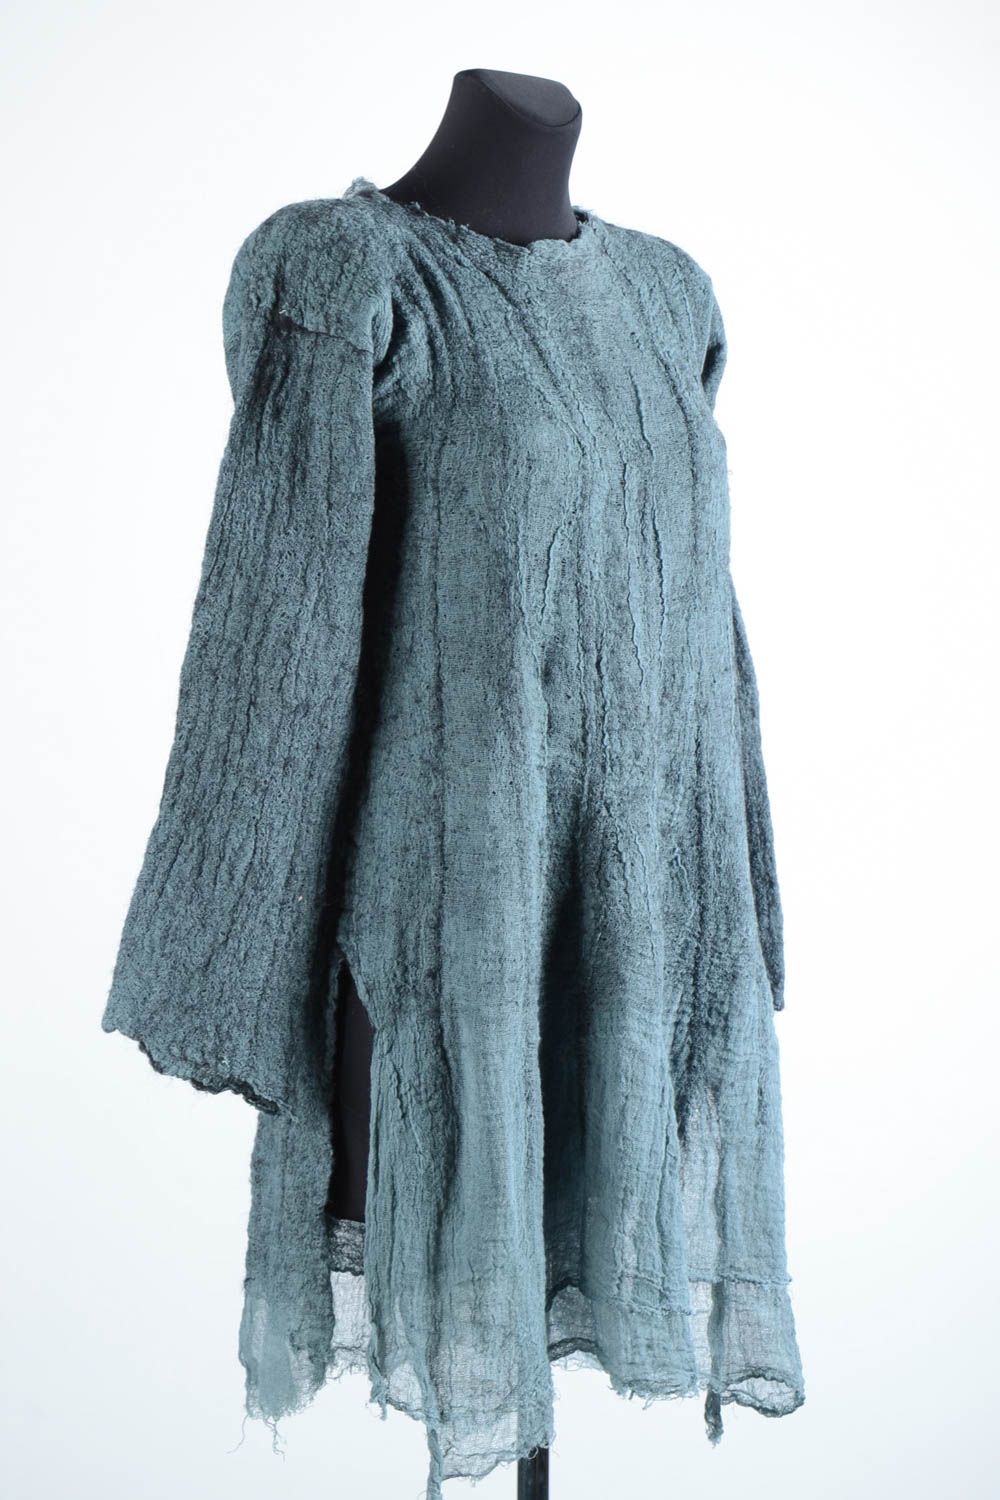 Короткое платье ручной работы валяное платье серое шерстяное женское платье фото 3